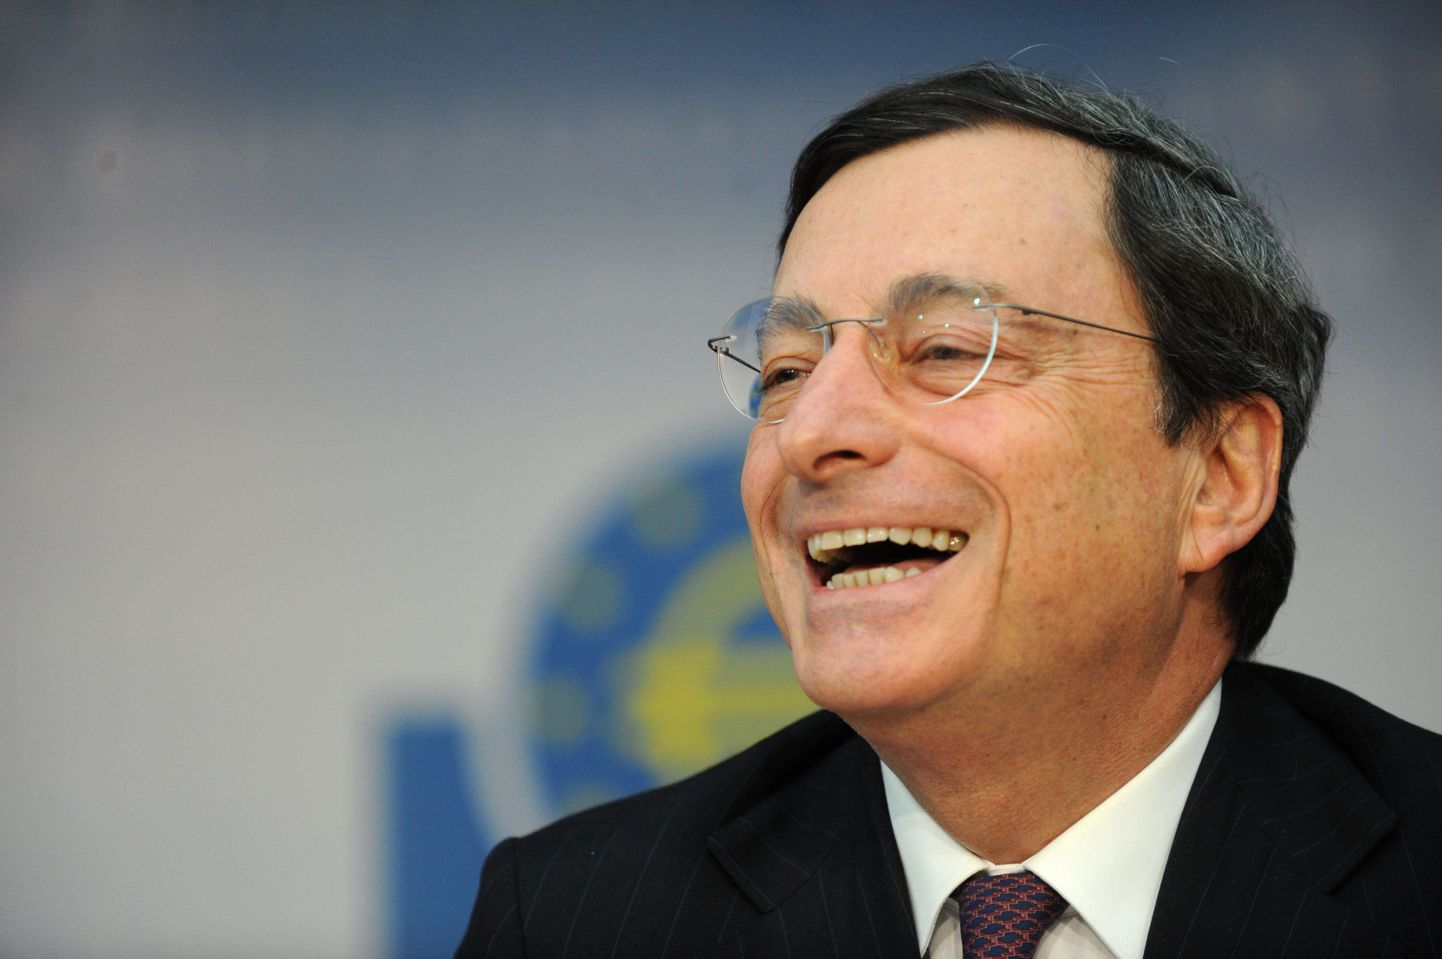 Mario Draghi täna Frankfurdis pressikonverentsil Kreeka kokkuleppe üle rõõmustamas.